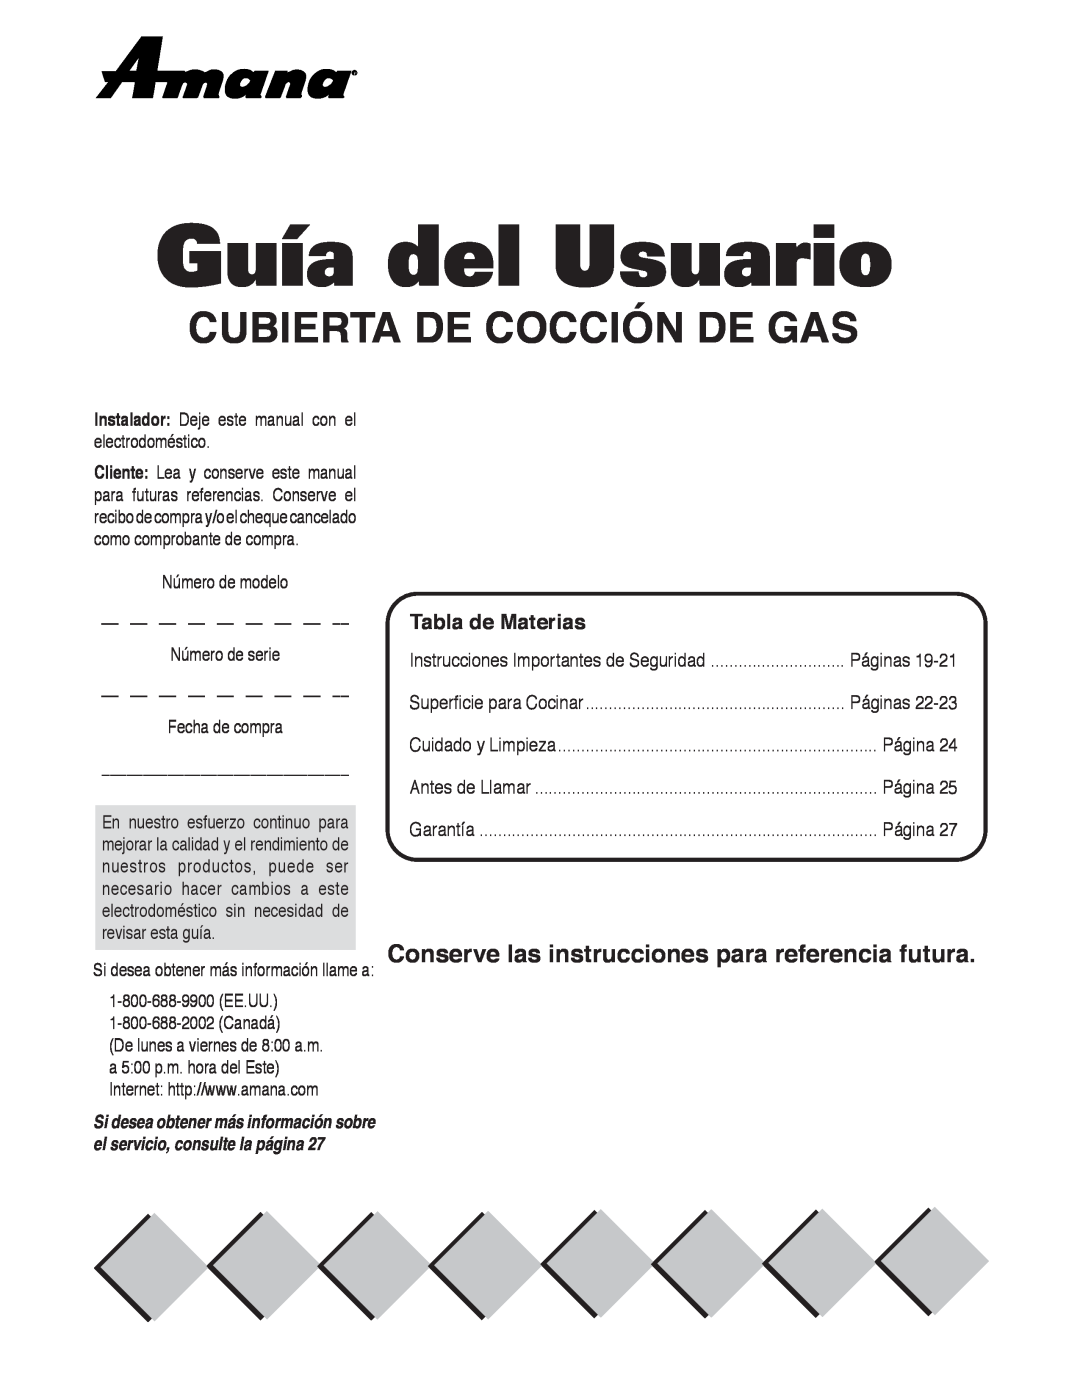 Maytag AKS3040 Guía del Usuario, Cubierta De Cocción De Gas, Conserve las instrucciones para referencia futura, Página 